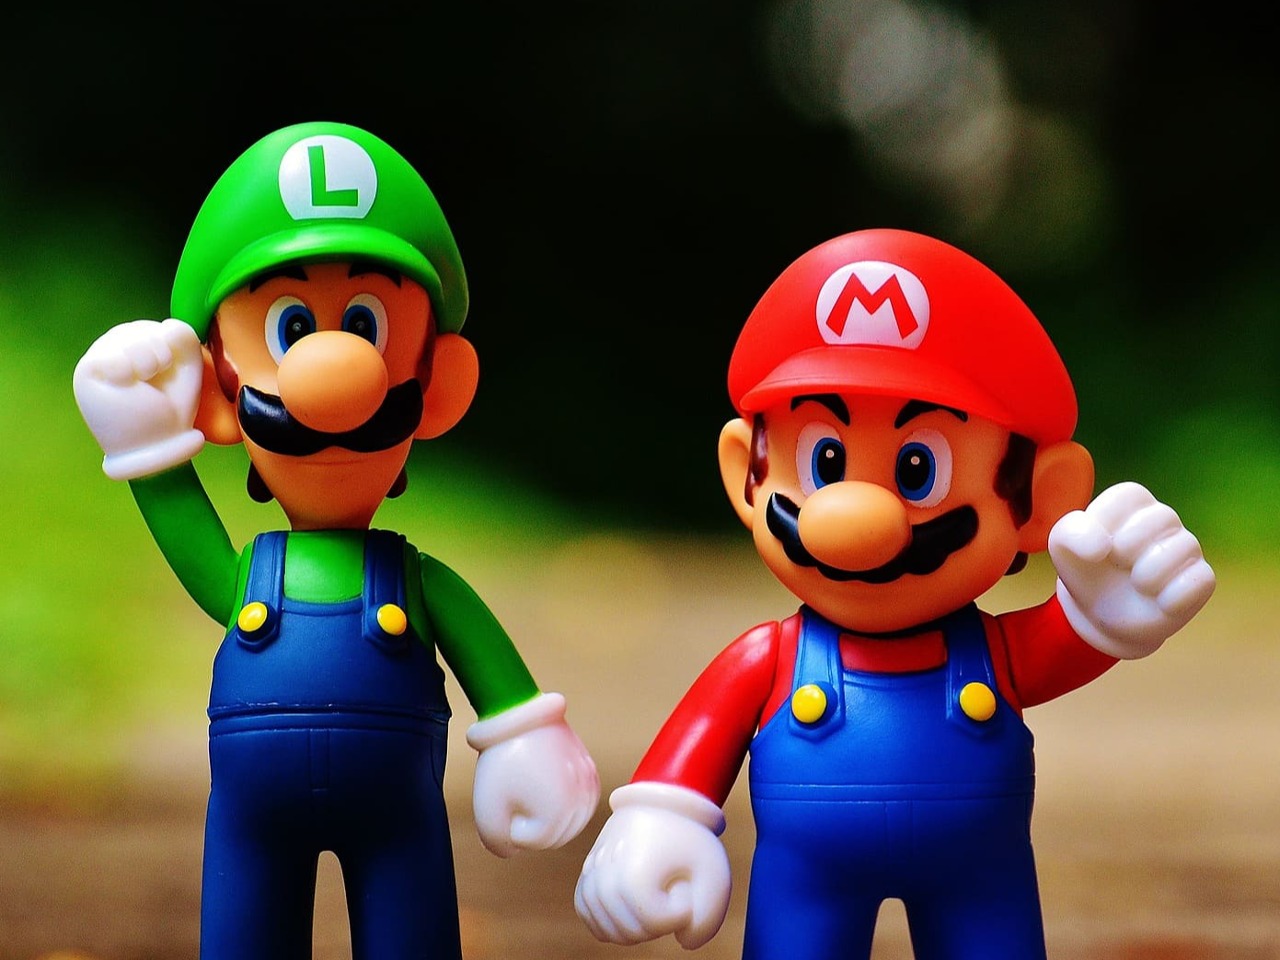 Figurines de Mario et Luigi.